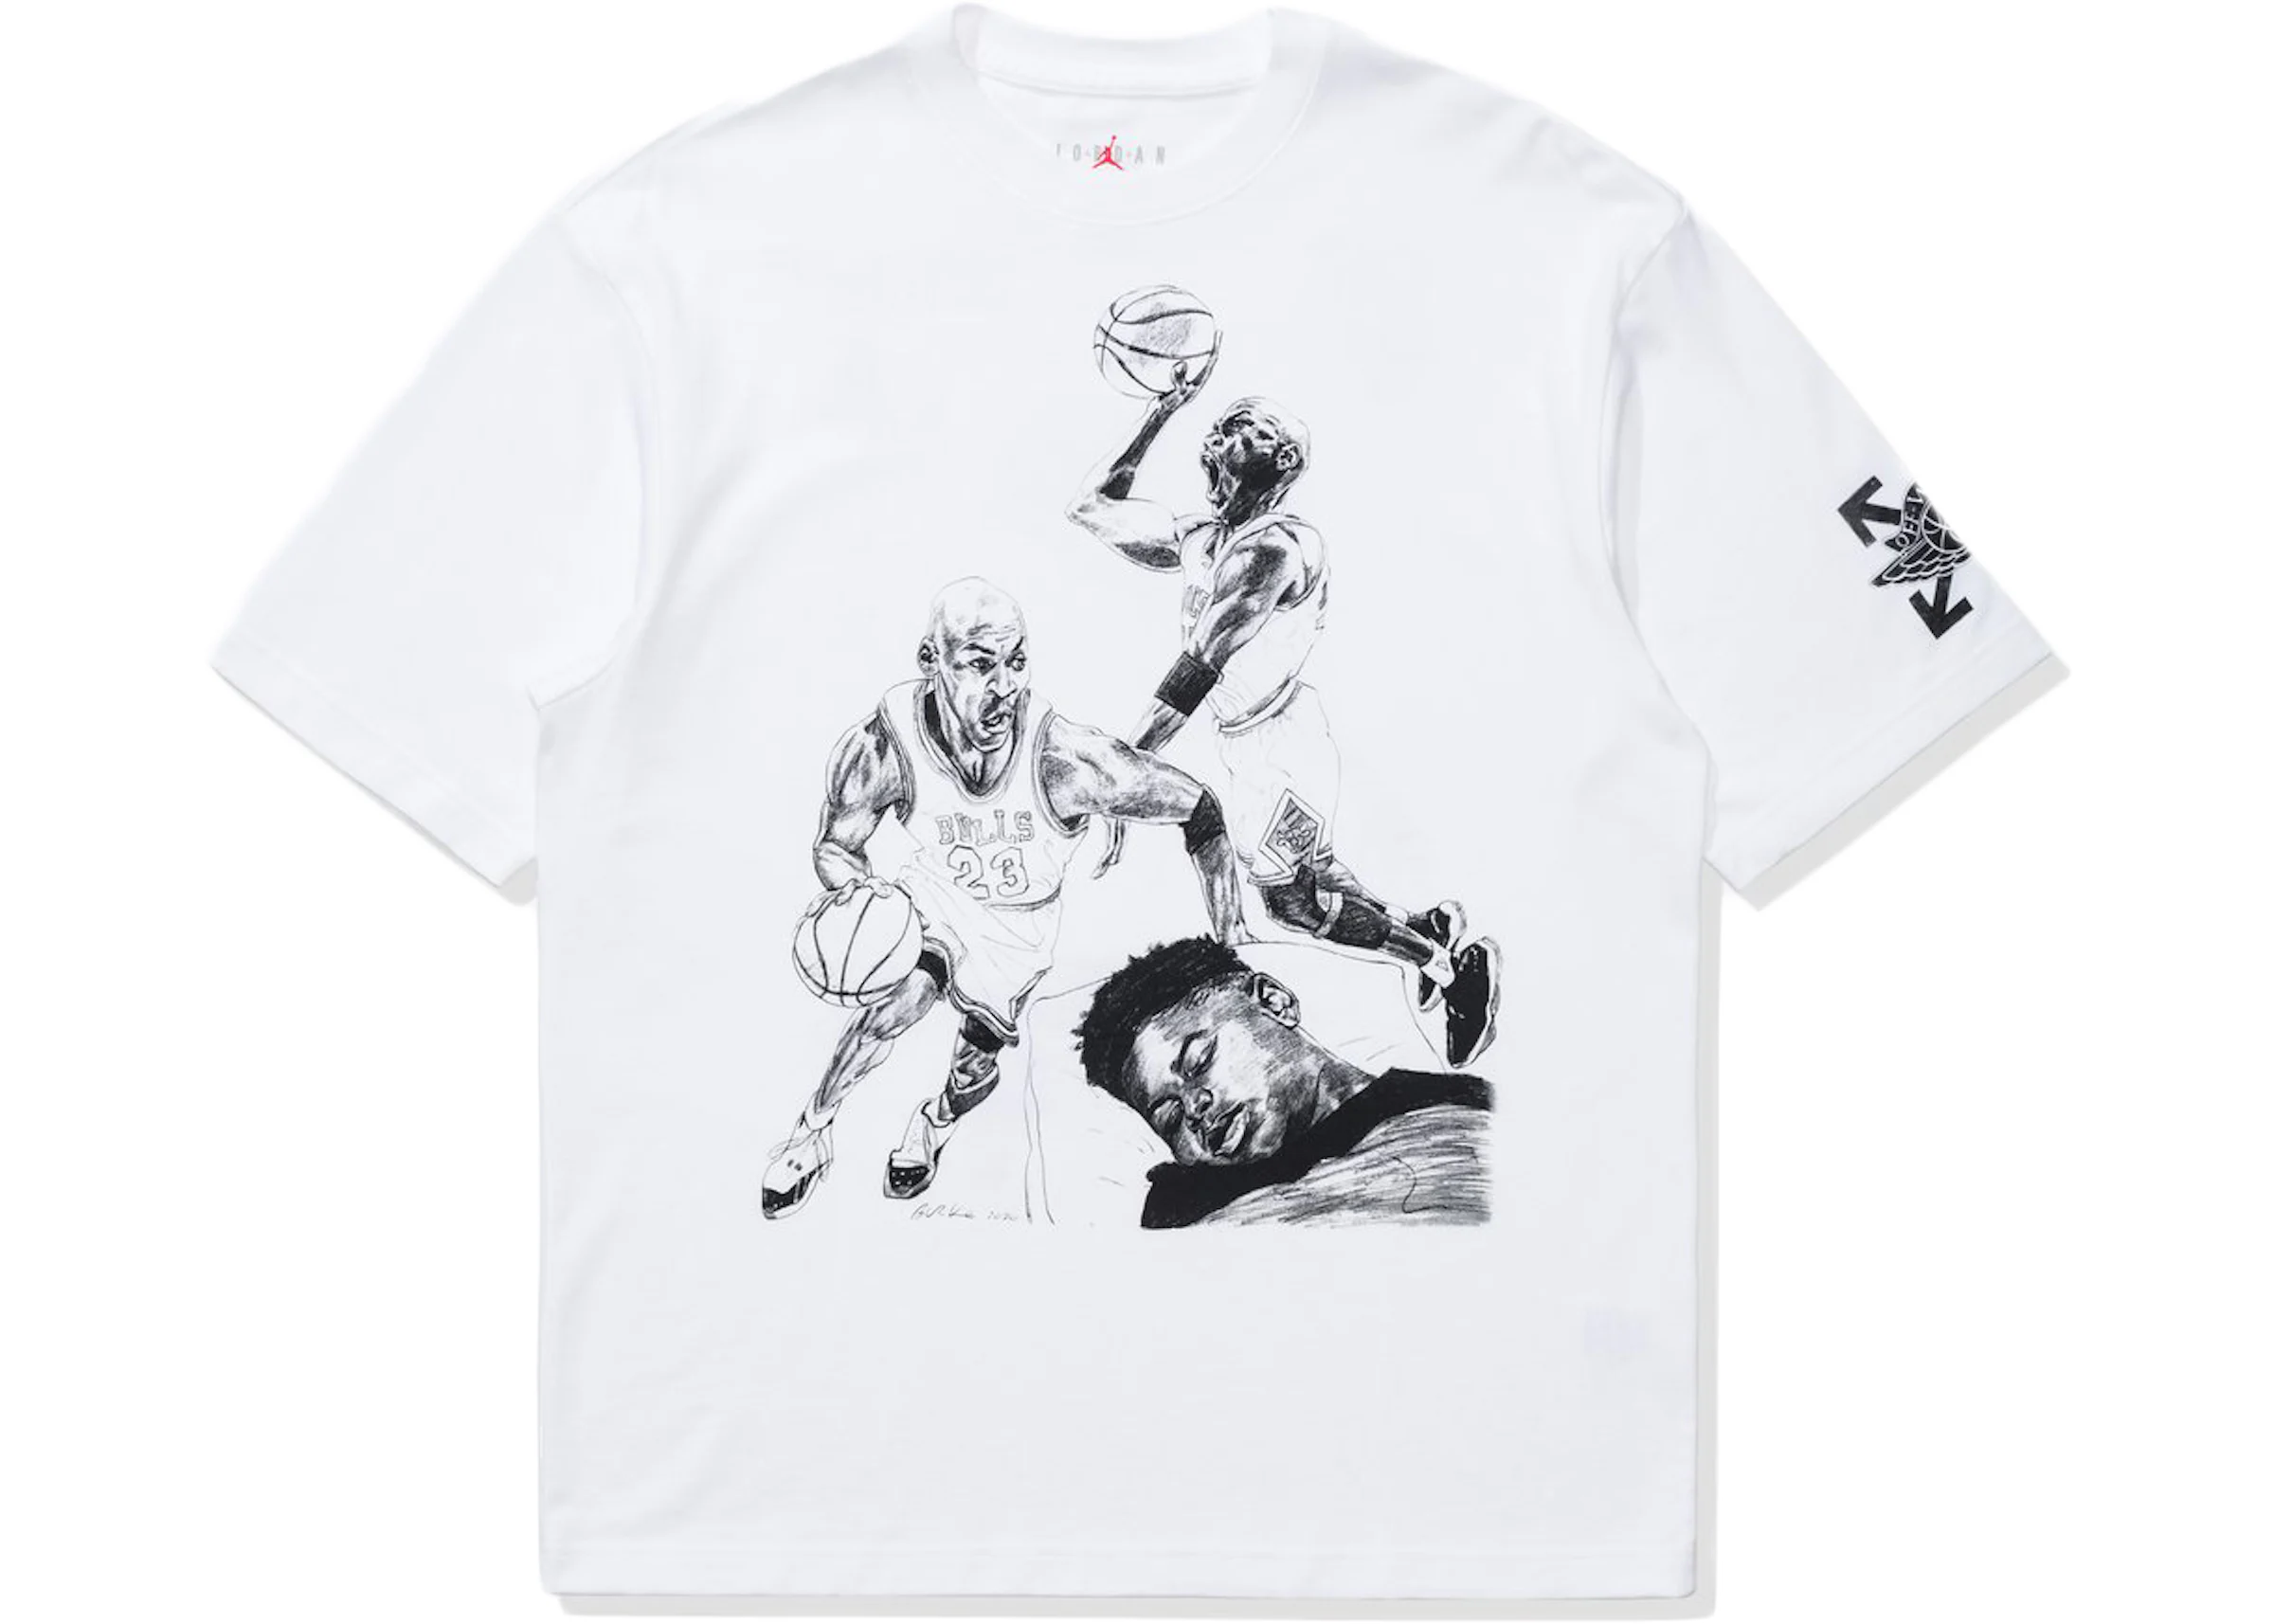 OFF-WHITE x Jordan T-shirt White Men's - SS21 - US